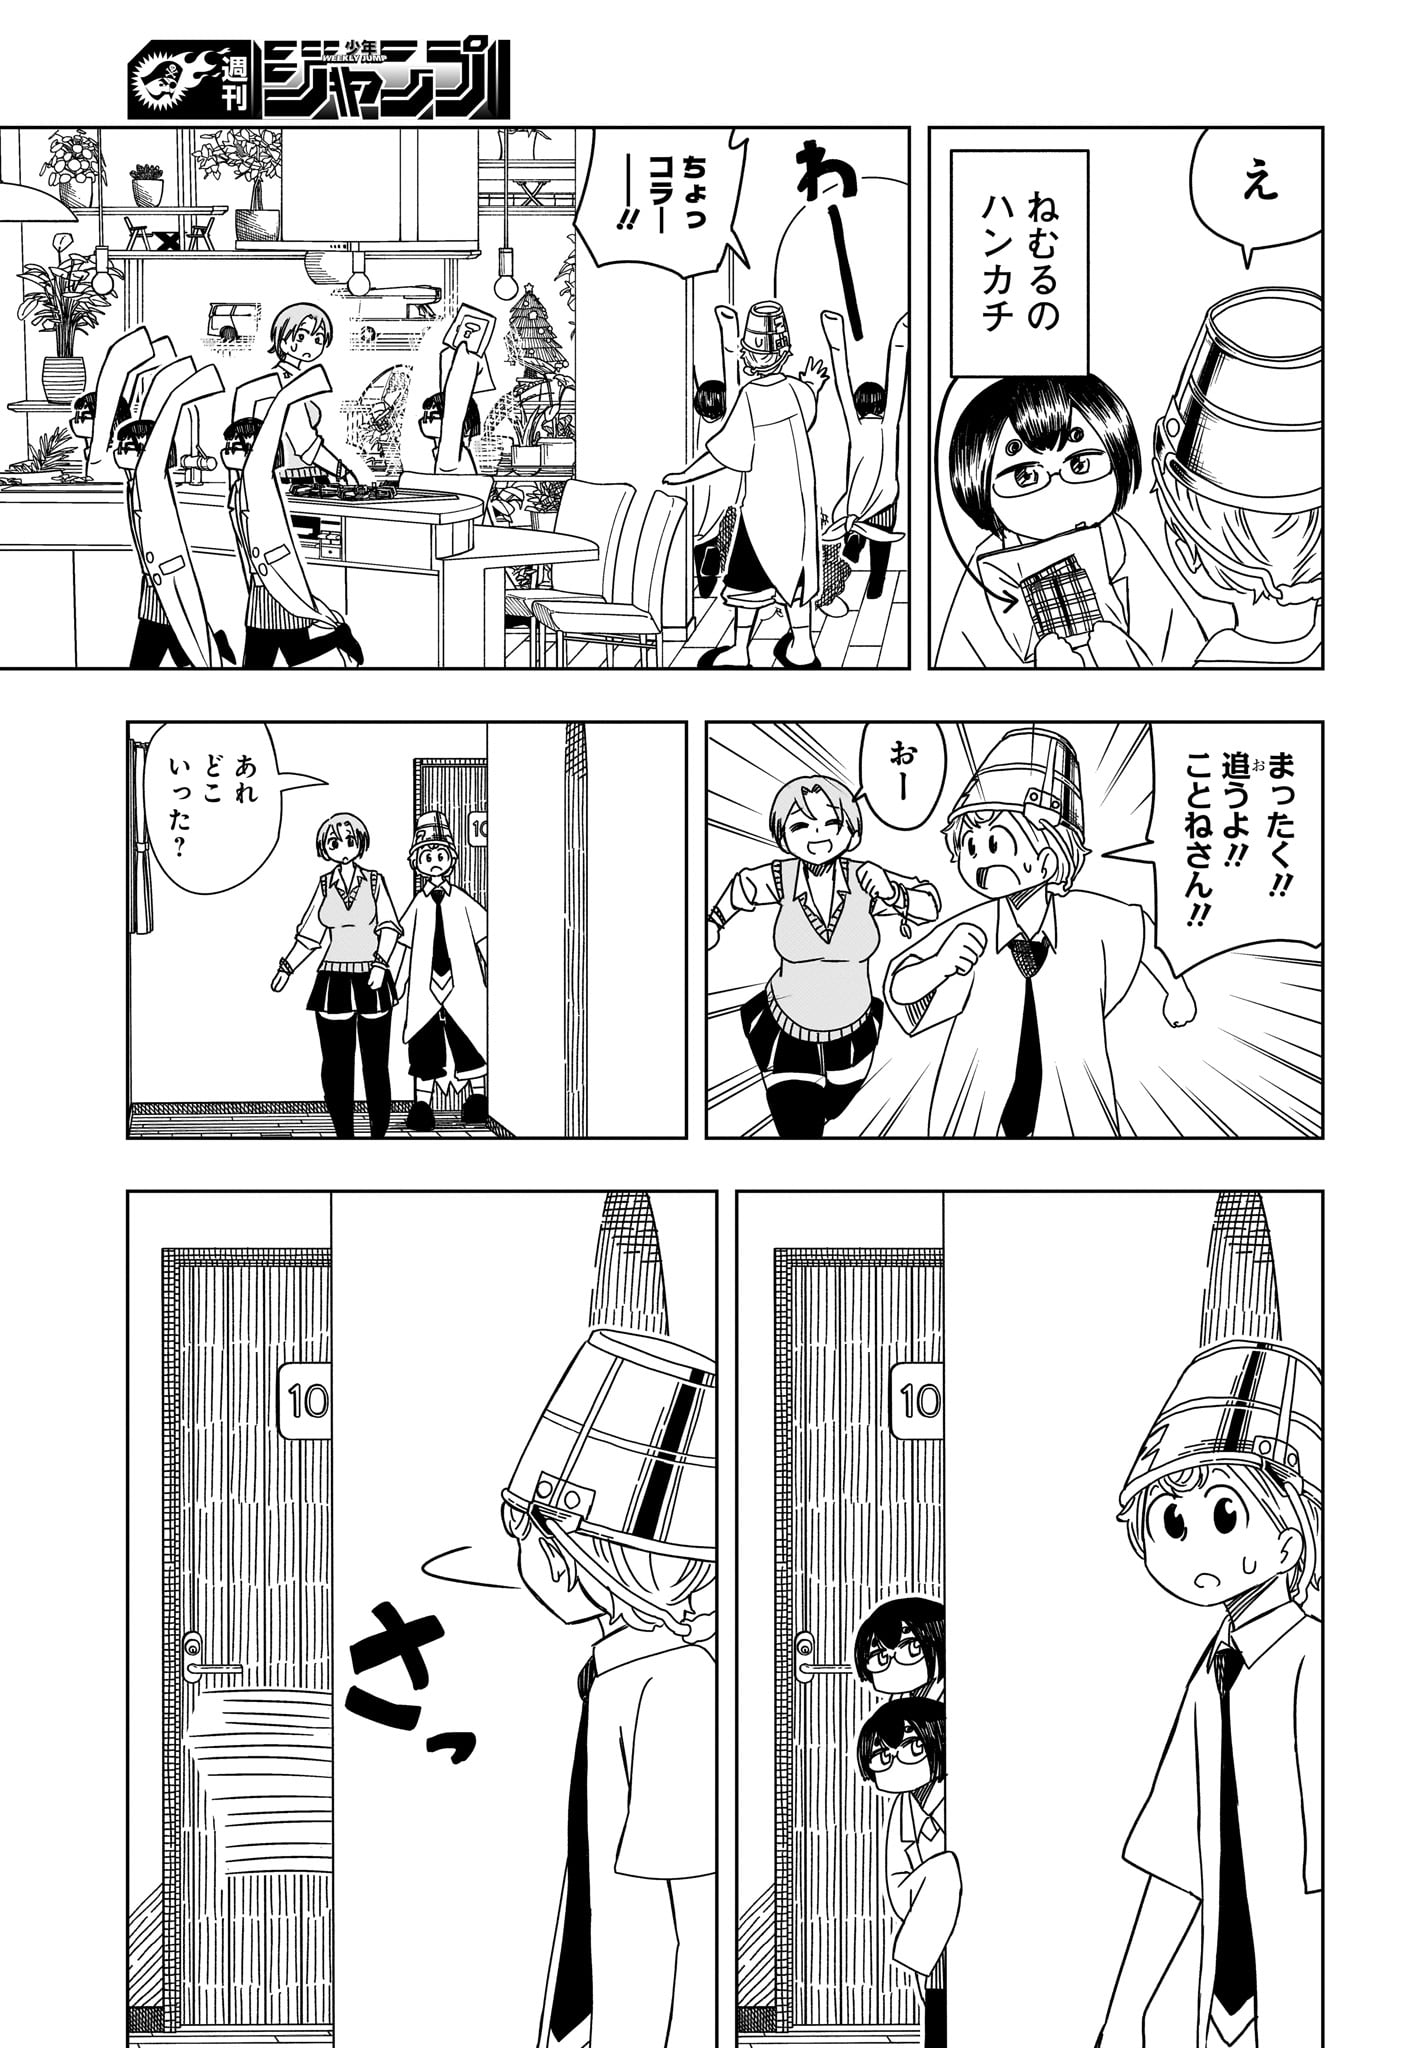 Saikuru Biyori - Chapter 4 - Page 9